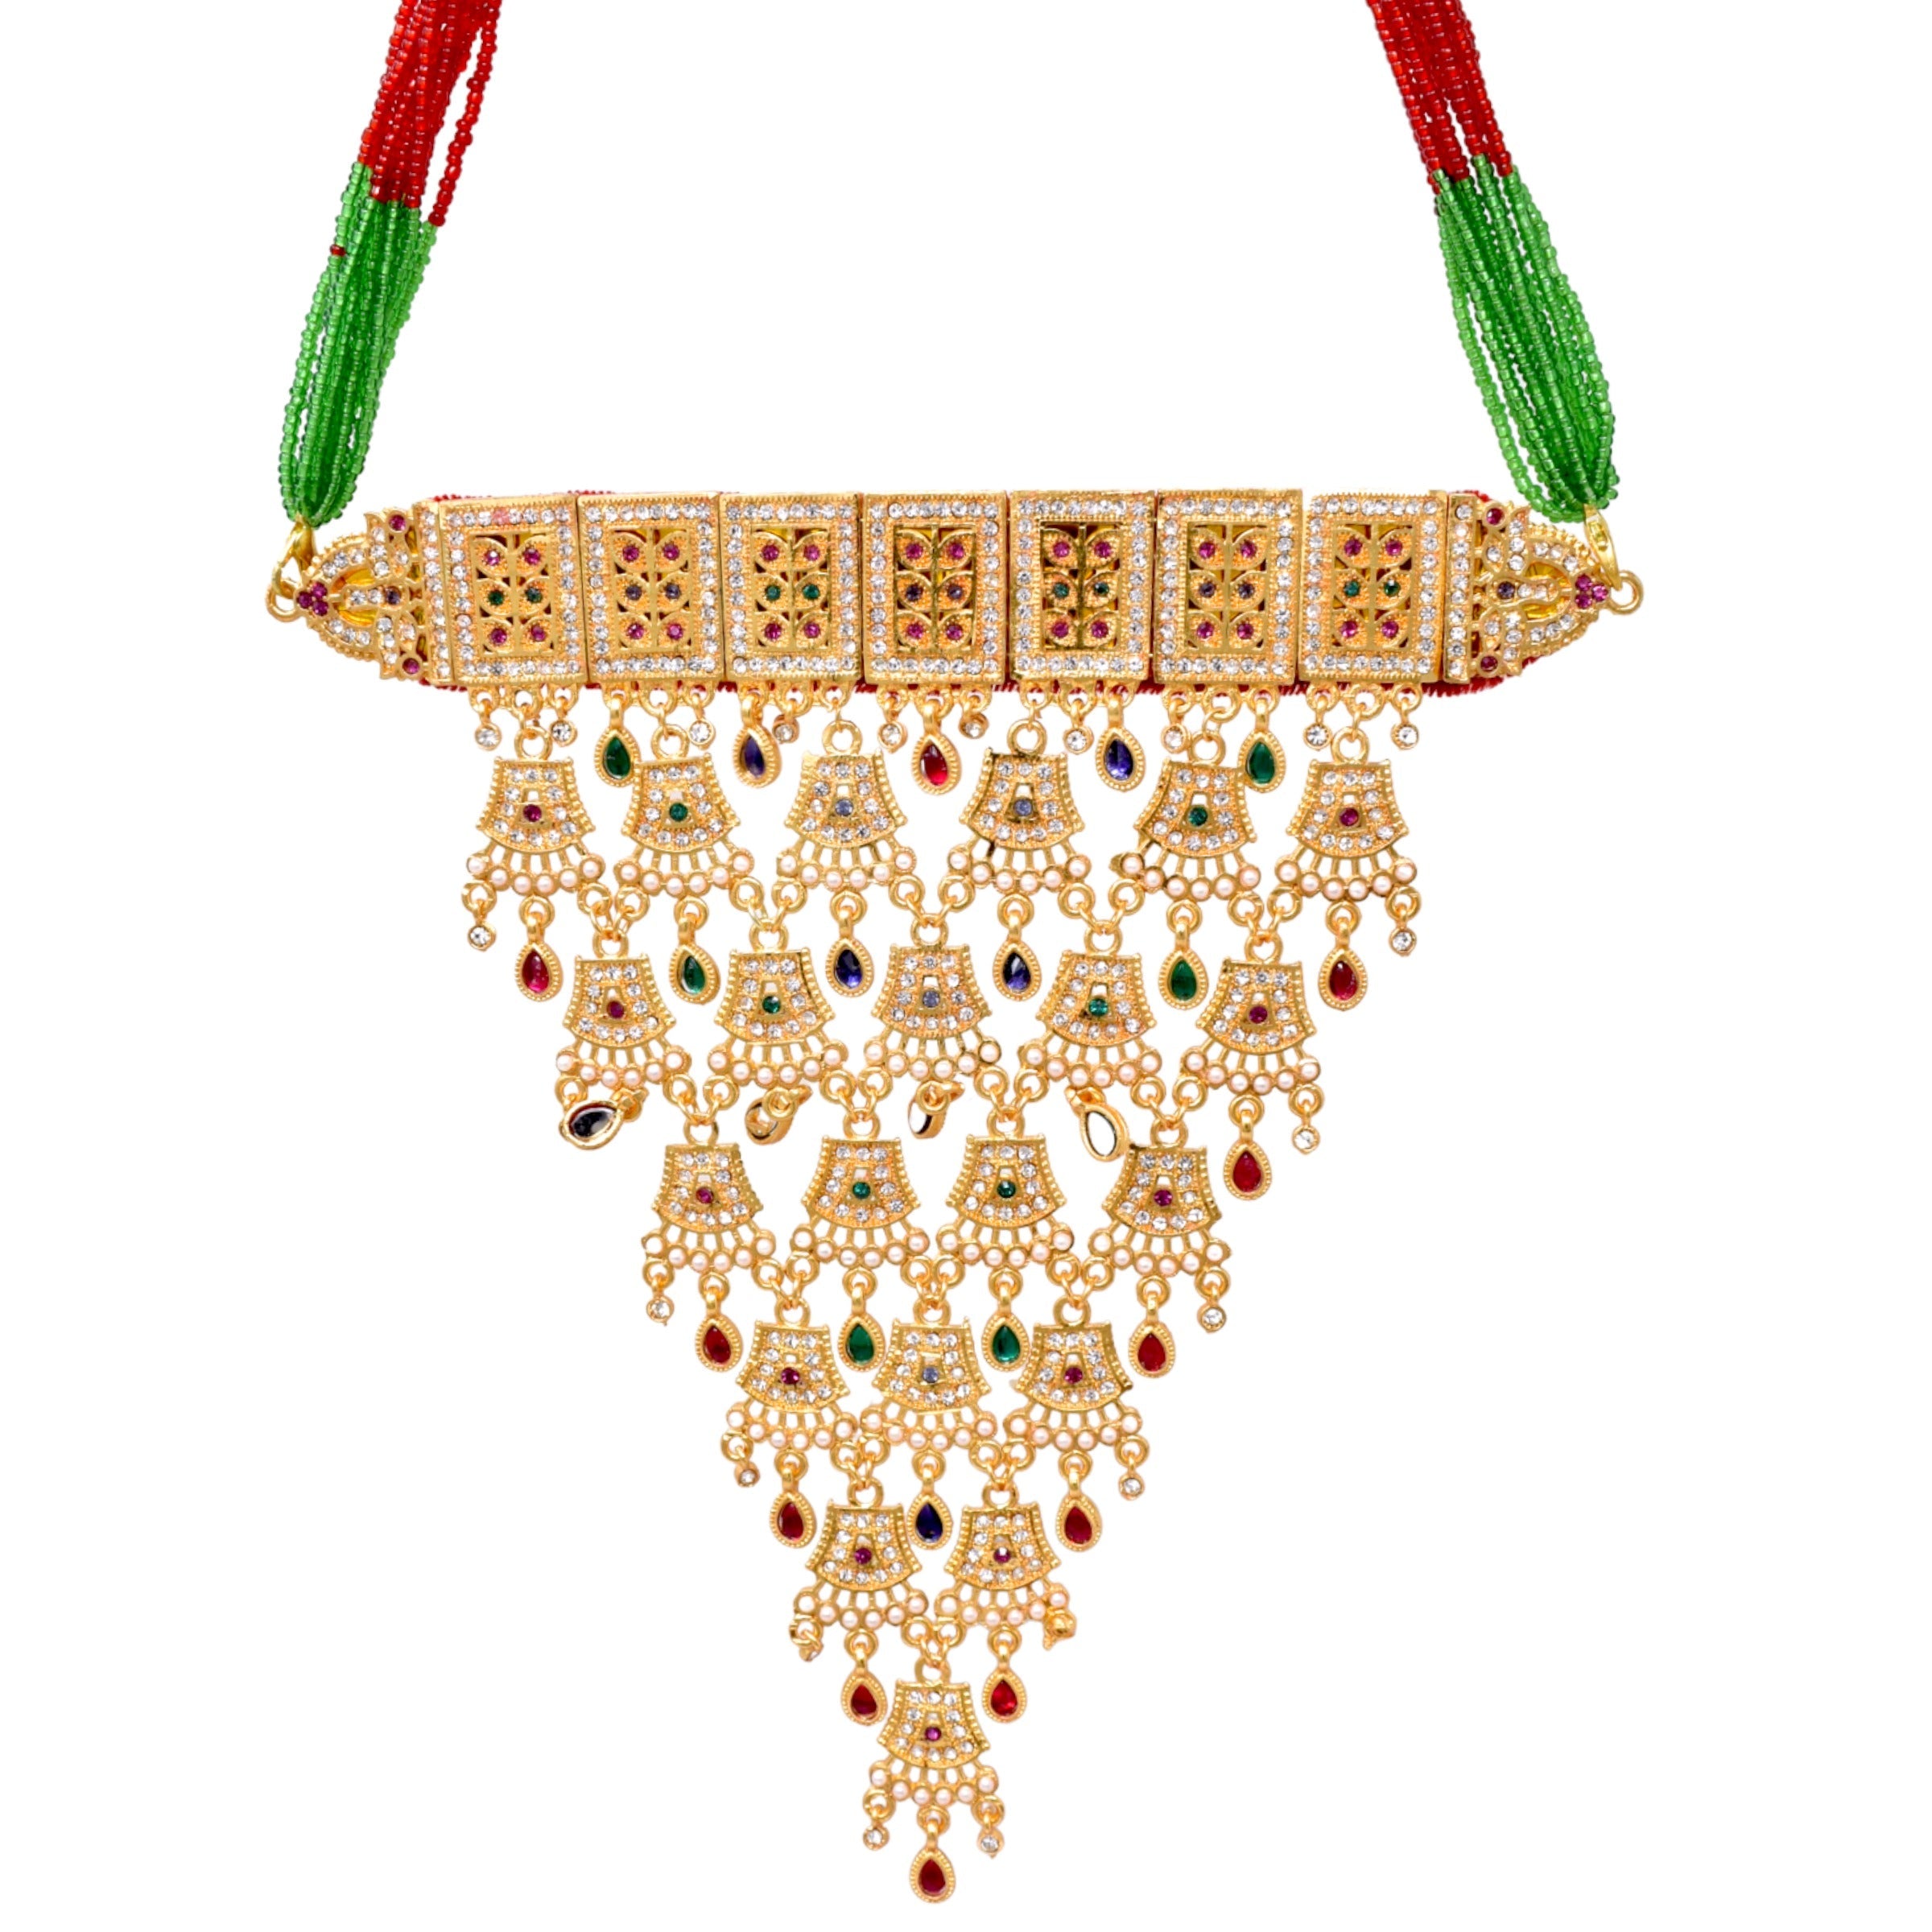 Rajasthani aad design